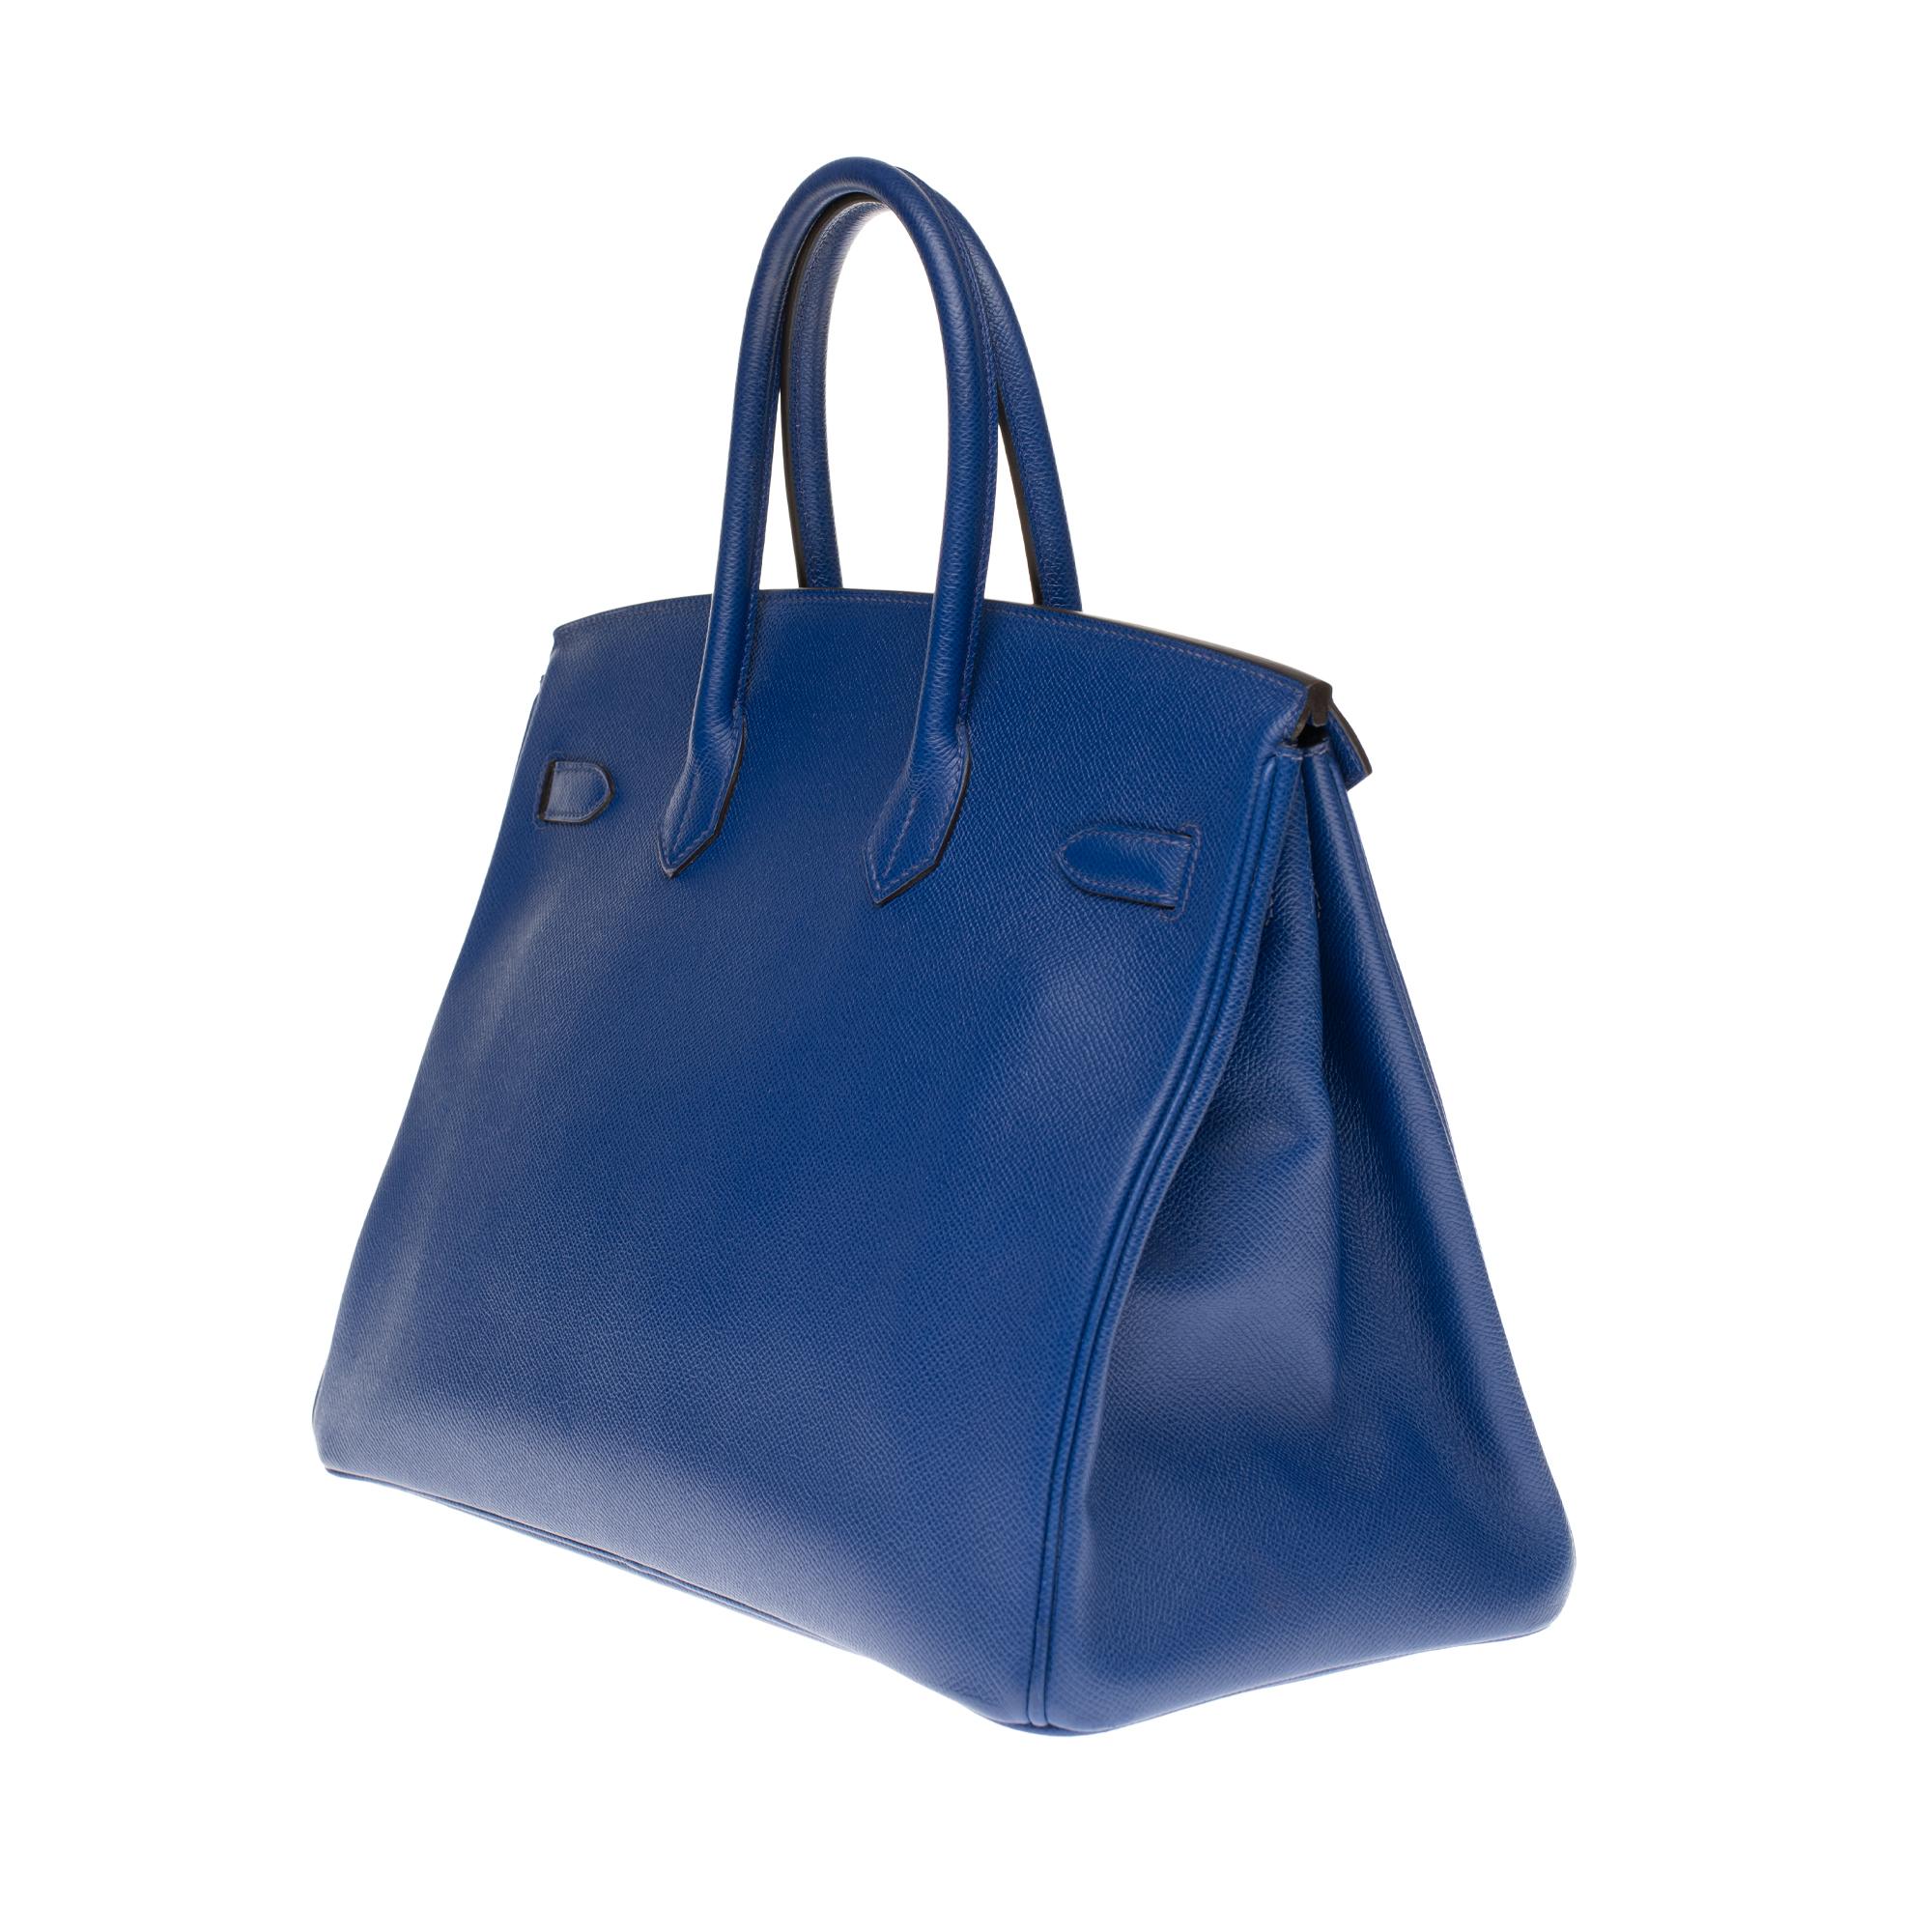 Hermès Birkin 35 handbag in bleu électrique epsom leather, GHW at ...